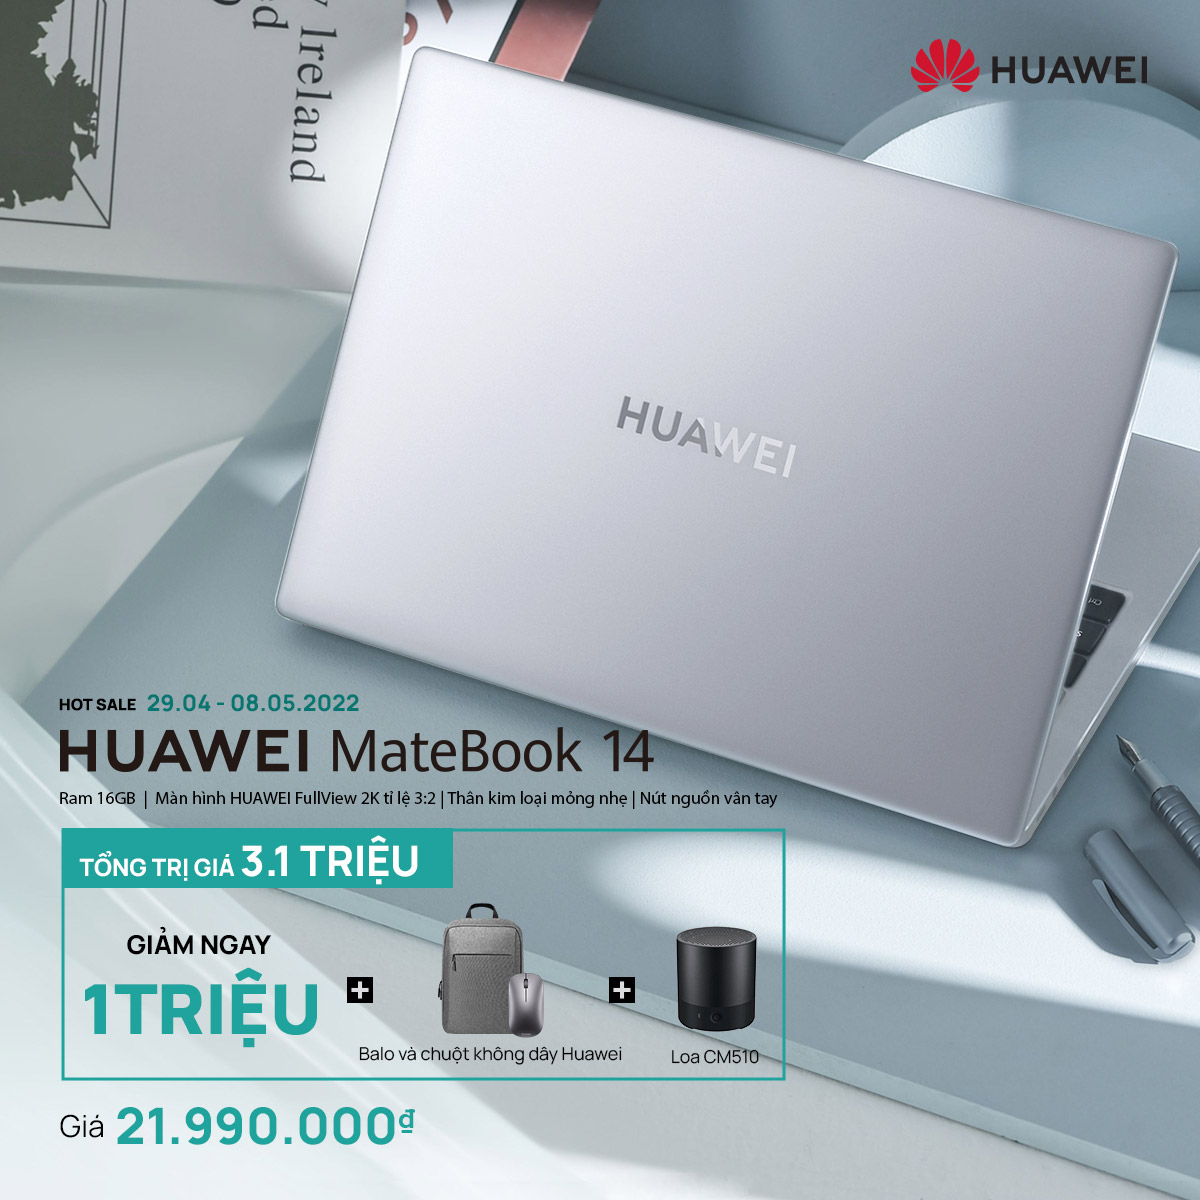 HUAWEI MateBook 14 có thêm phiên bản AMD Ryzen 5000